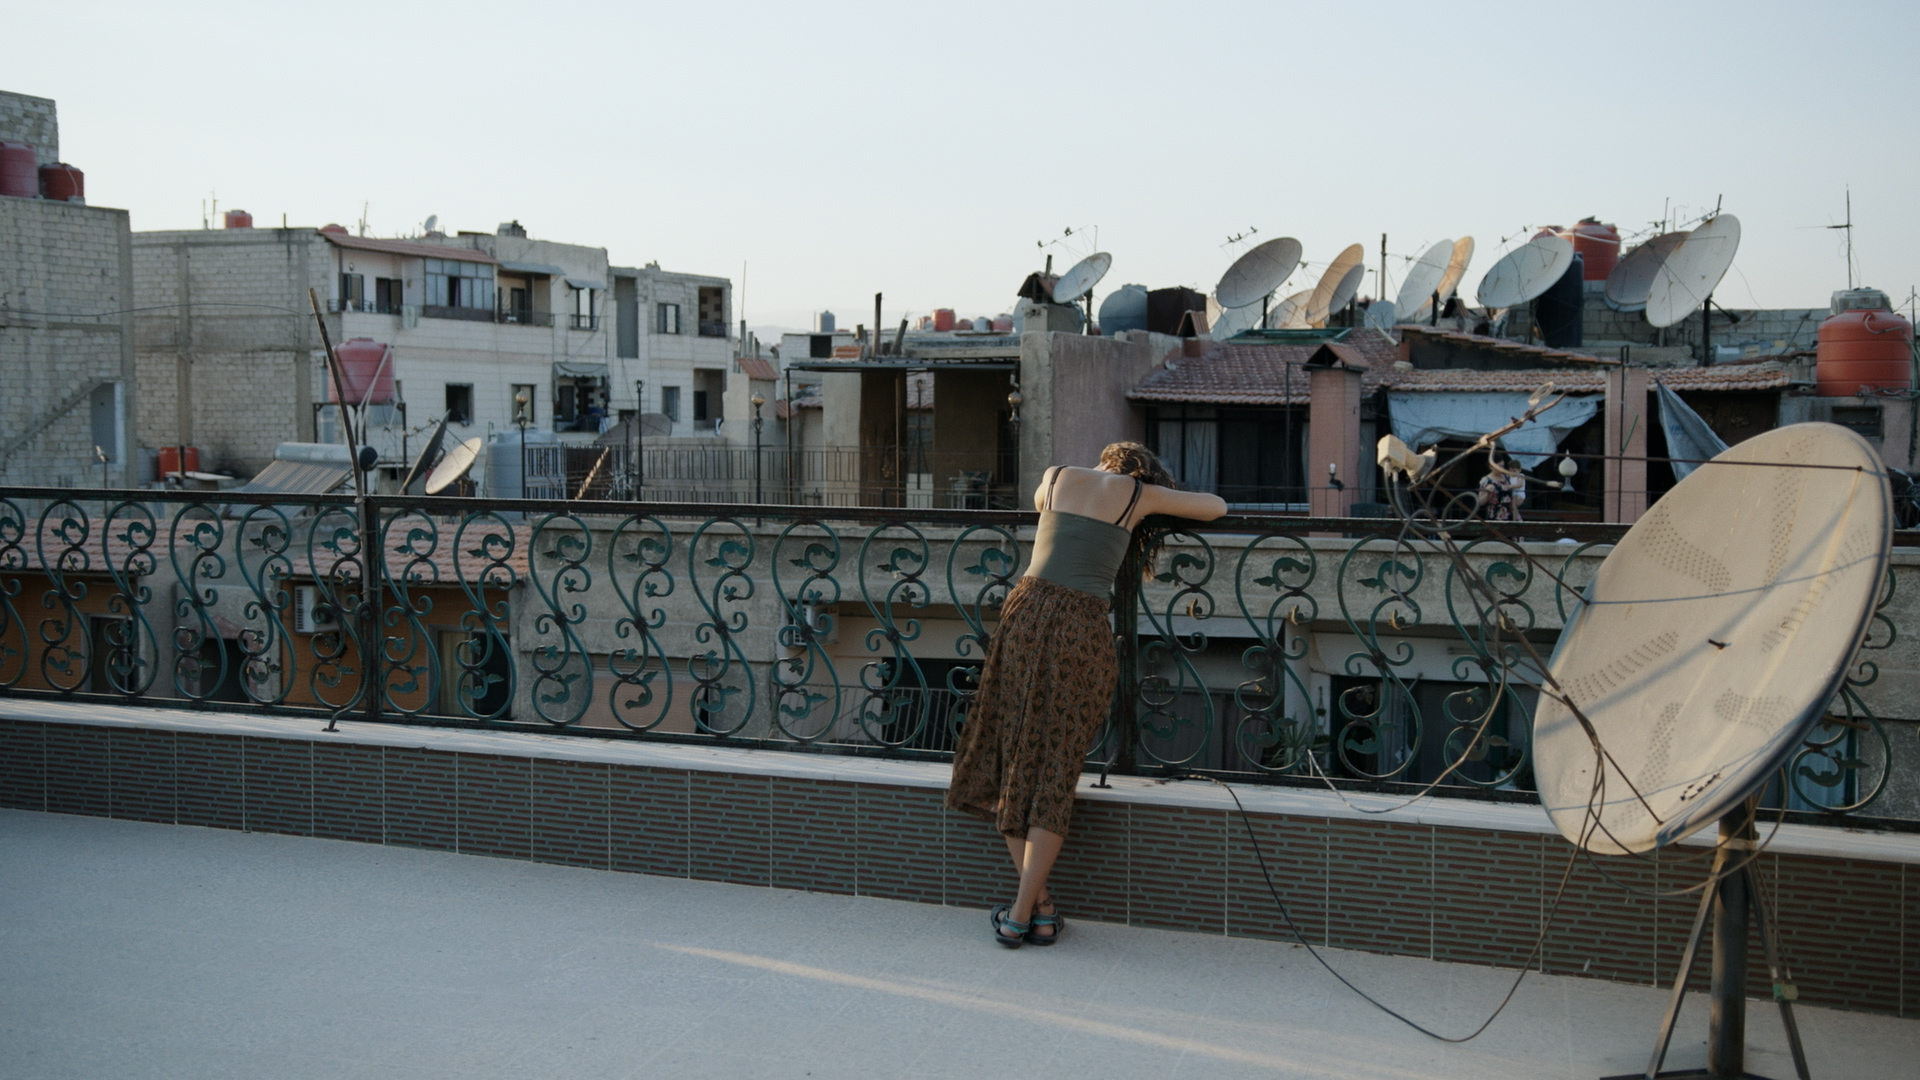 žena opírající se o zábradlí na terase, v pozadí domy